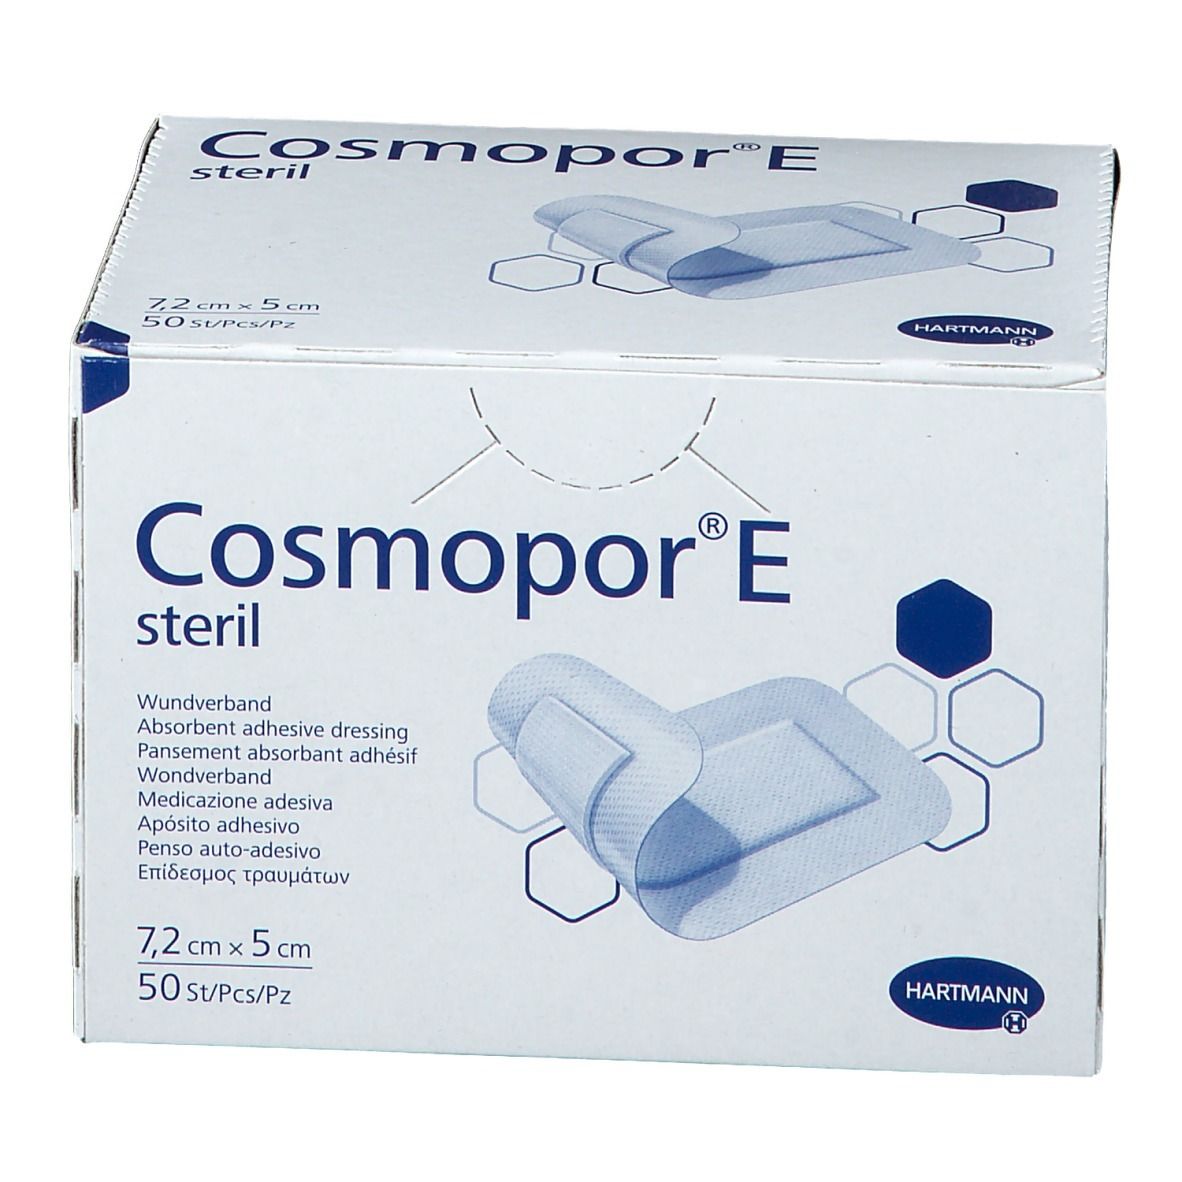 Cosmopor e. 9008170 Cosmopor i.v. 100шт/уп. Cosmopor e steril впитывающий. Pansement. INDUTEX S.P.A. 0410935 Sterile eto.